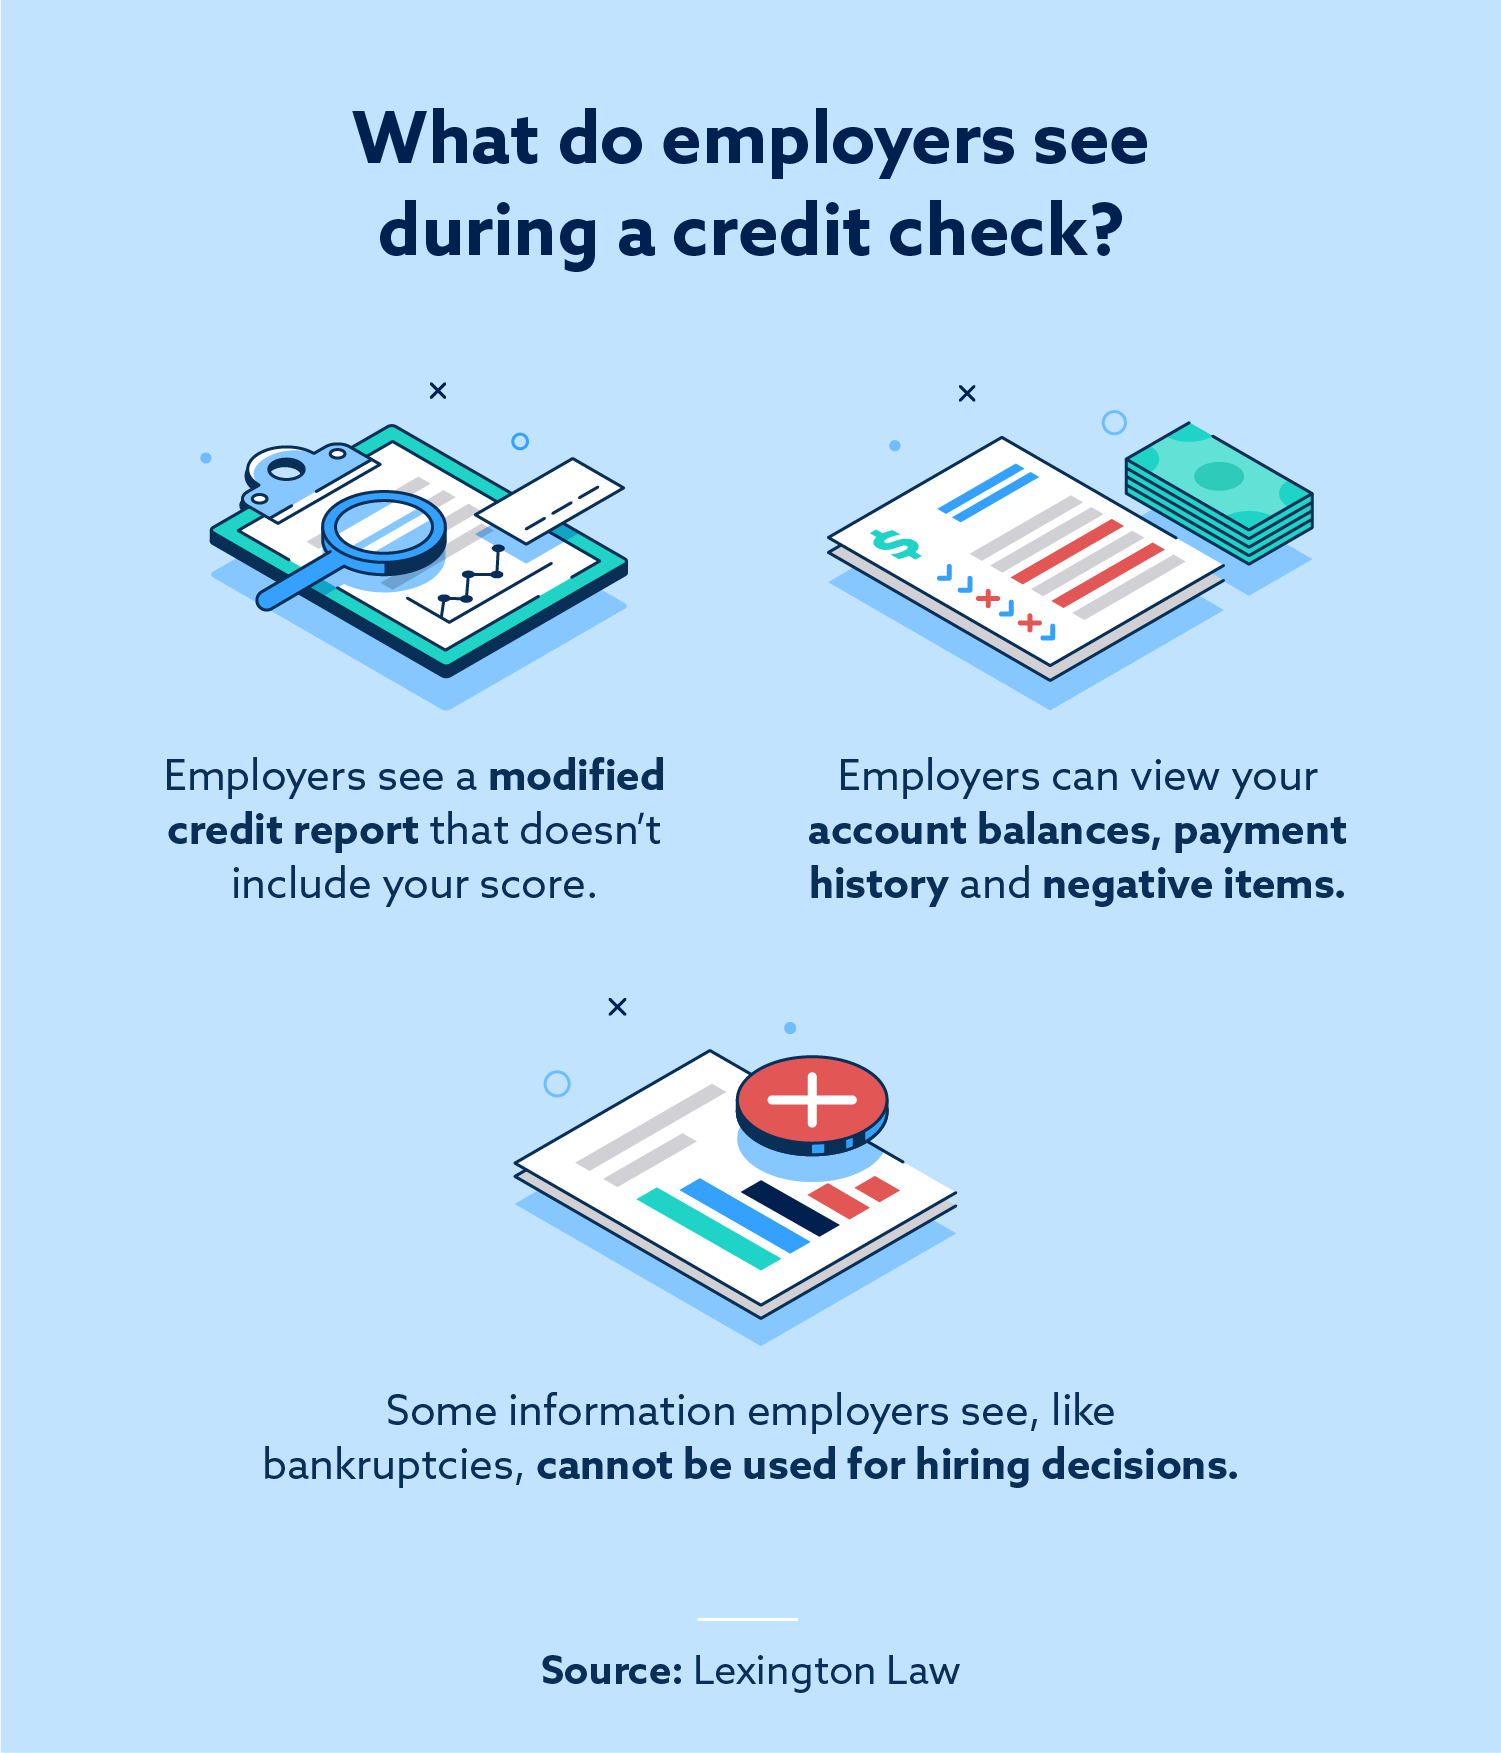 Sjekker arbeidsgivere kredittpoeng?